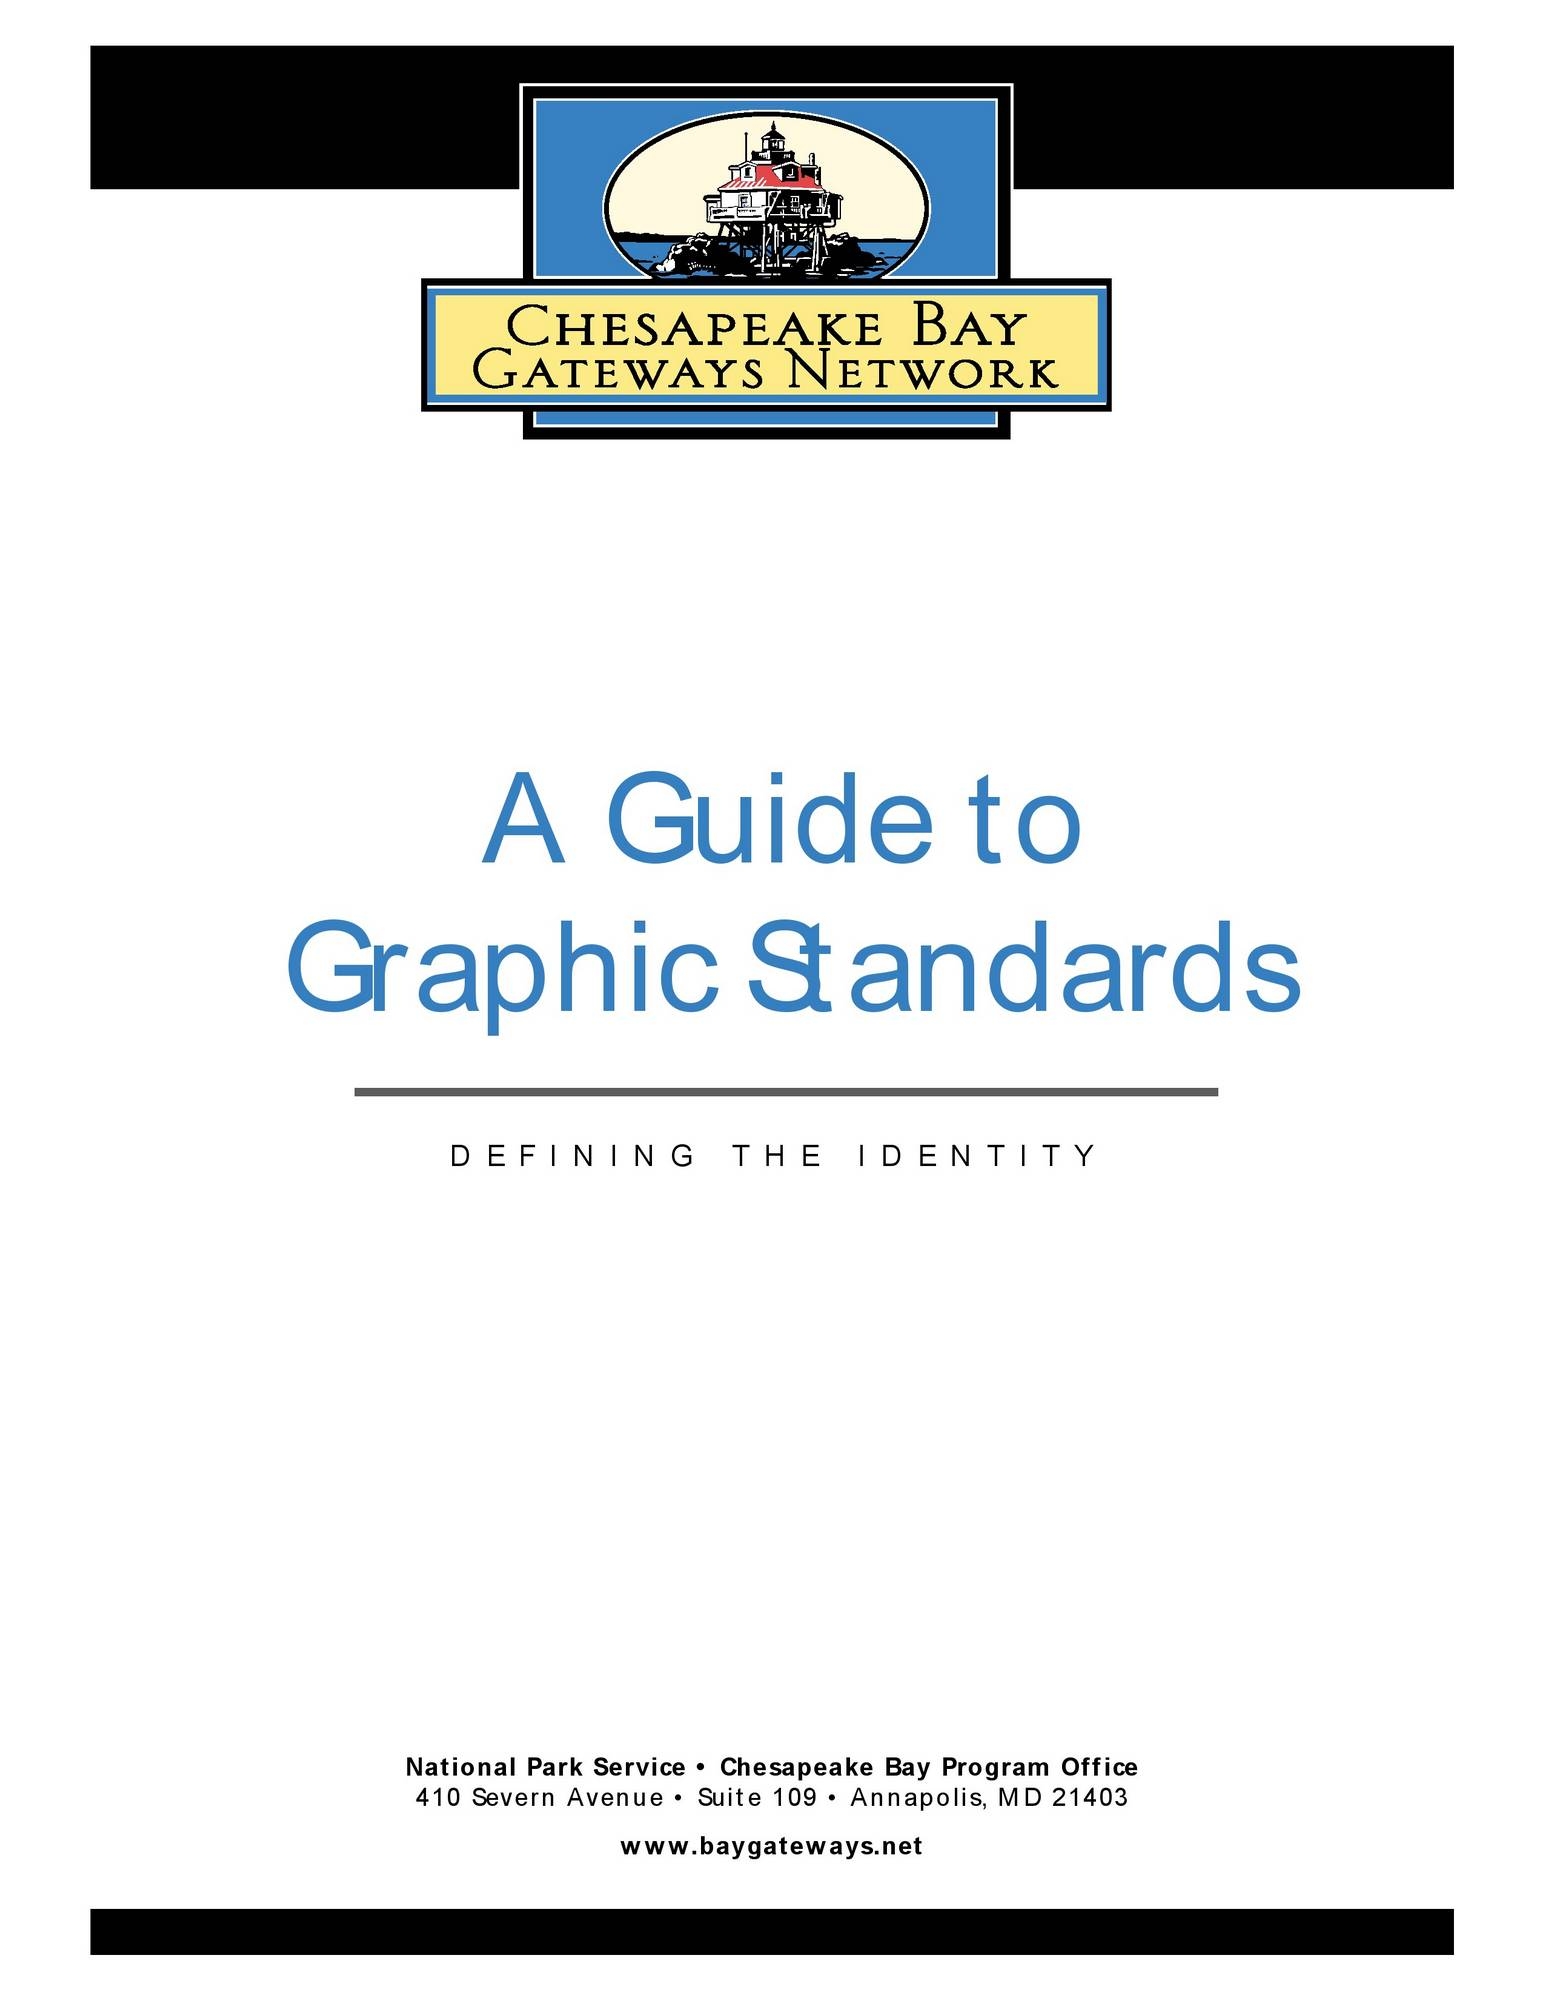 Chesapeake Bay Gateways Network Graphic Standards